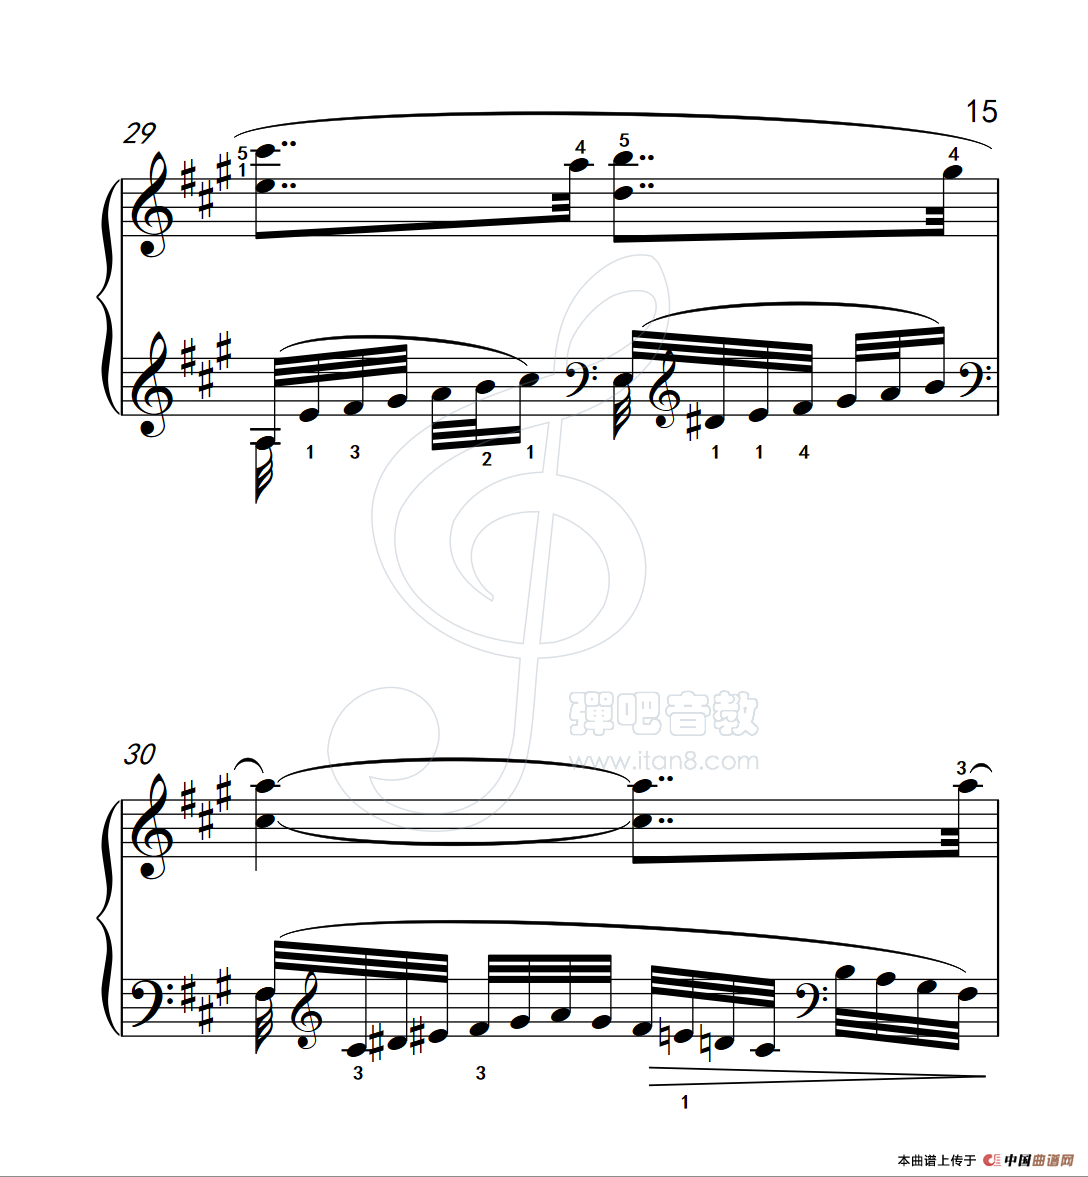 《练习曲 36》钢琴曲谱图分享